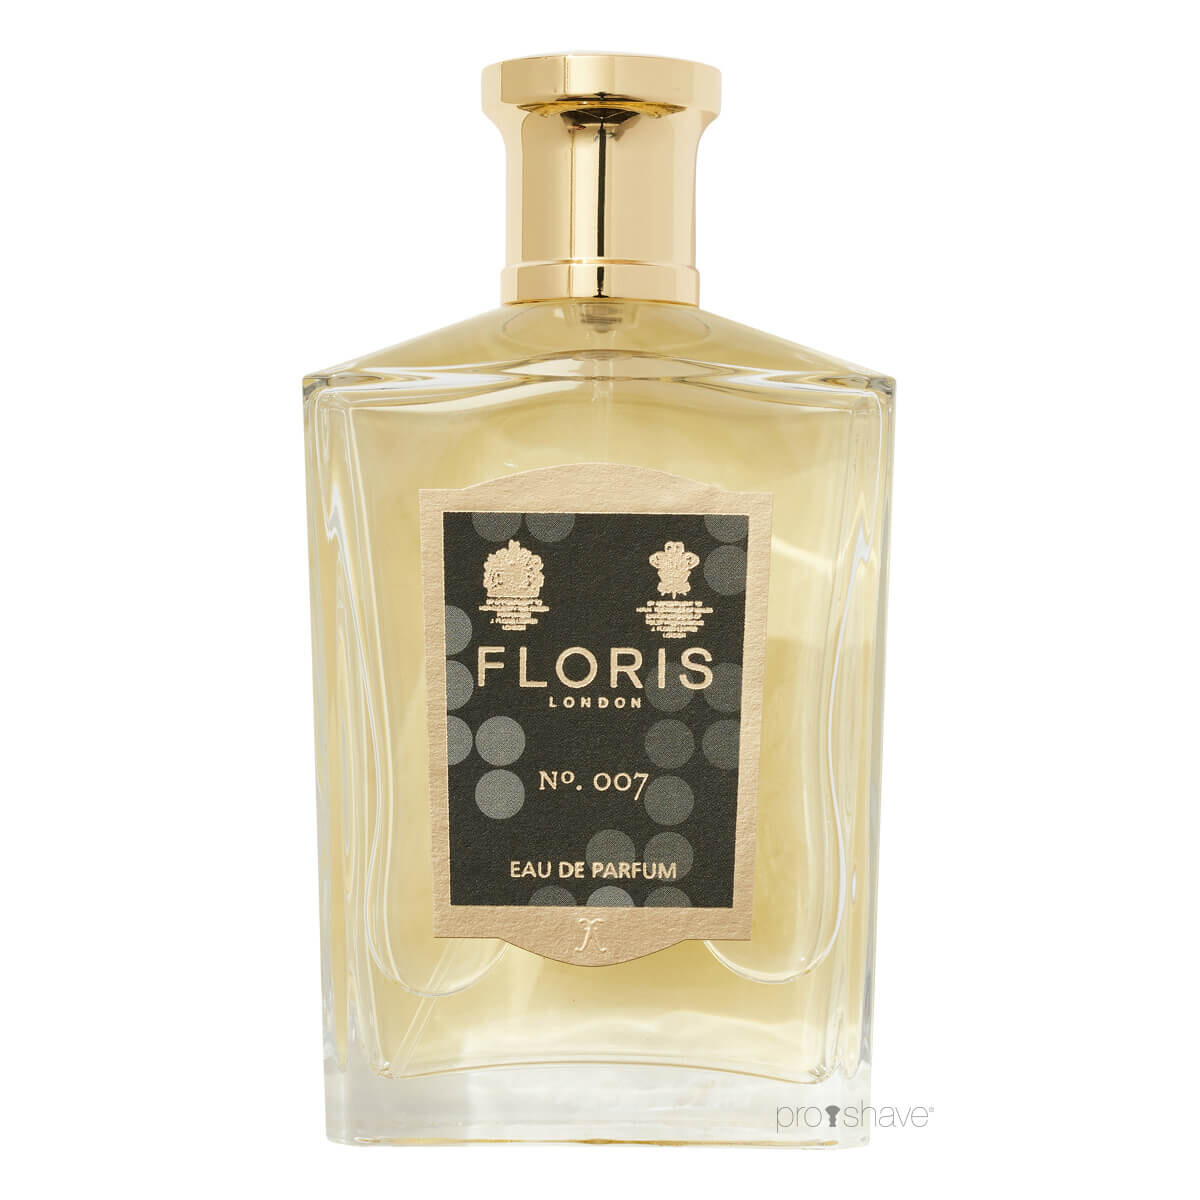 Billede af Floris No. 007, Eau de Parfum, 100 ml.